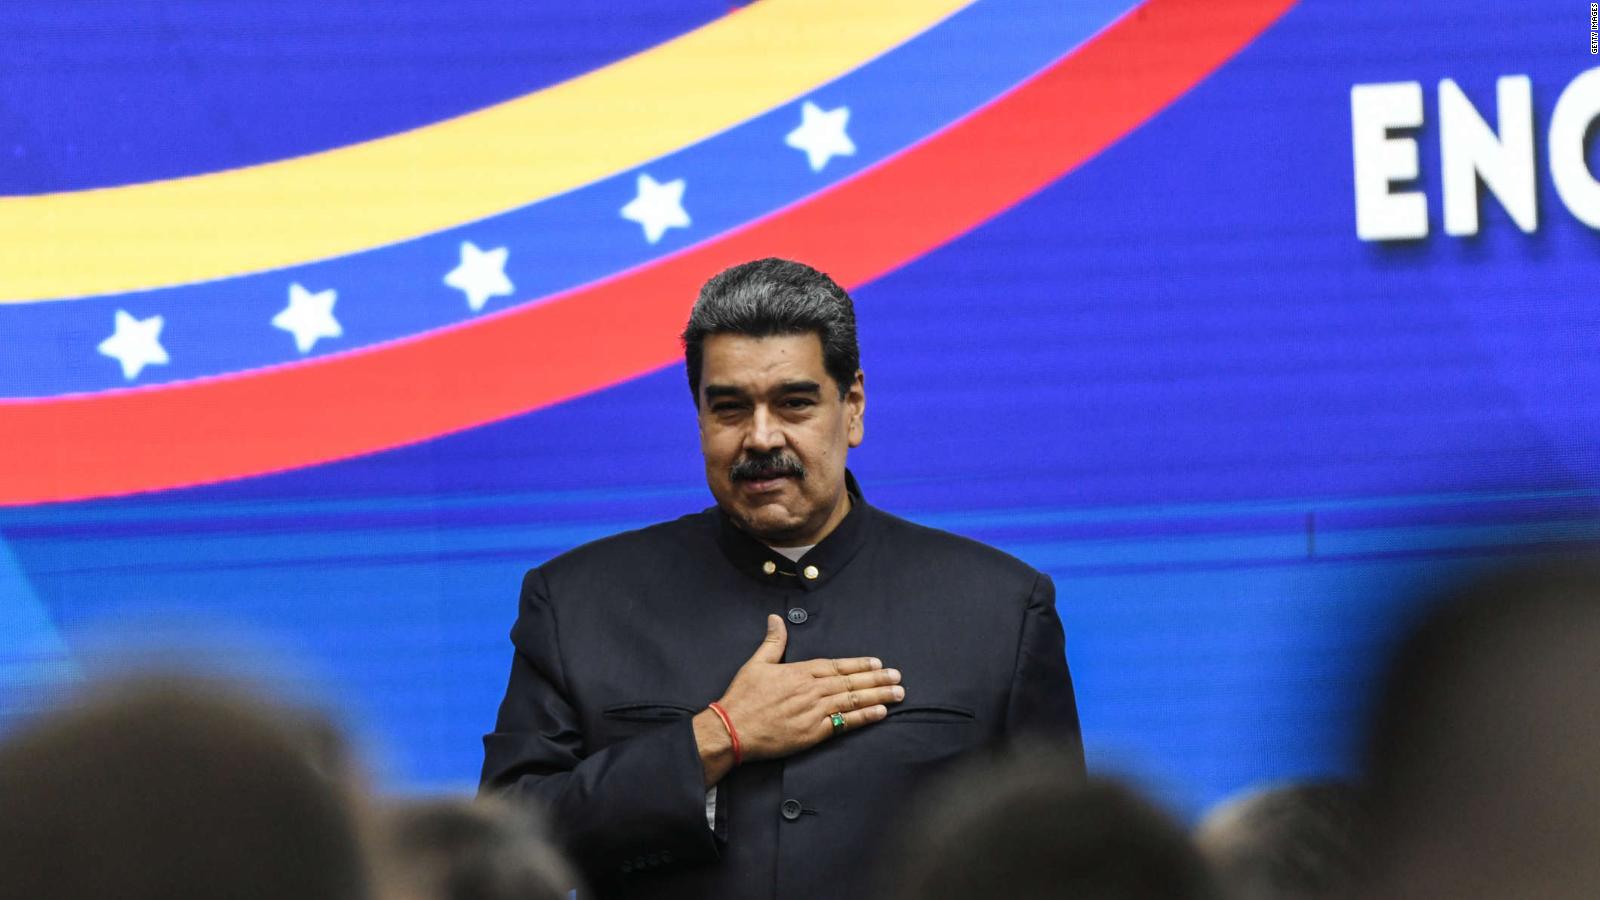 ¿Qué opina Leopoldo López sobre las denuncias de Nicolás Maduro de
que quieren matarlo?